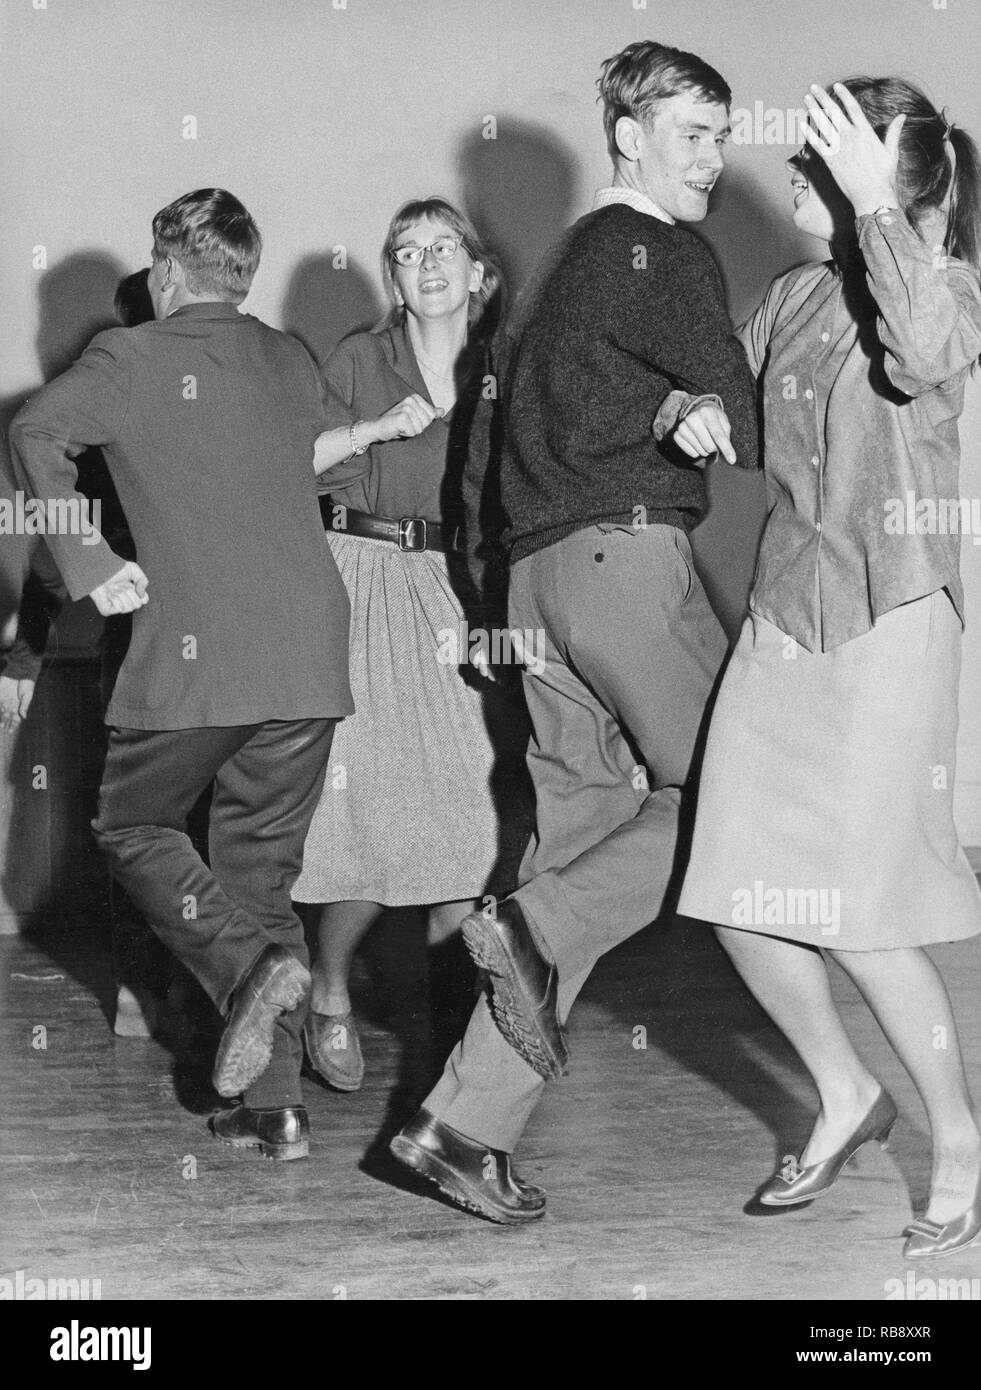 Tanz in den 1960er Jahren. Zwei junge Paare zusammen tanzen und Spaß haben. Schweden 1960 Stockfoto